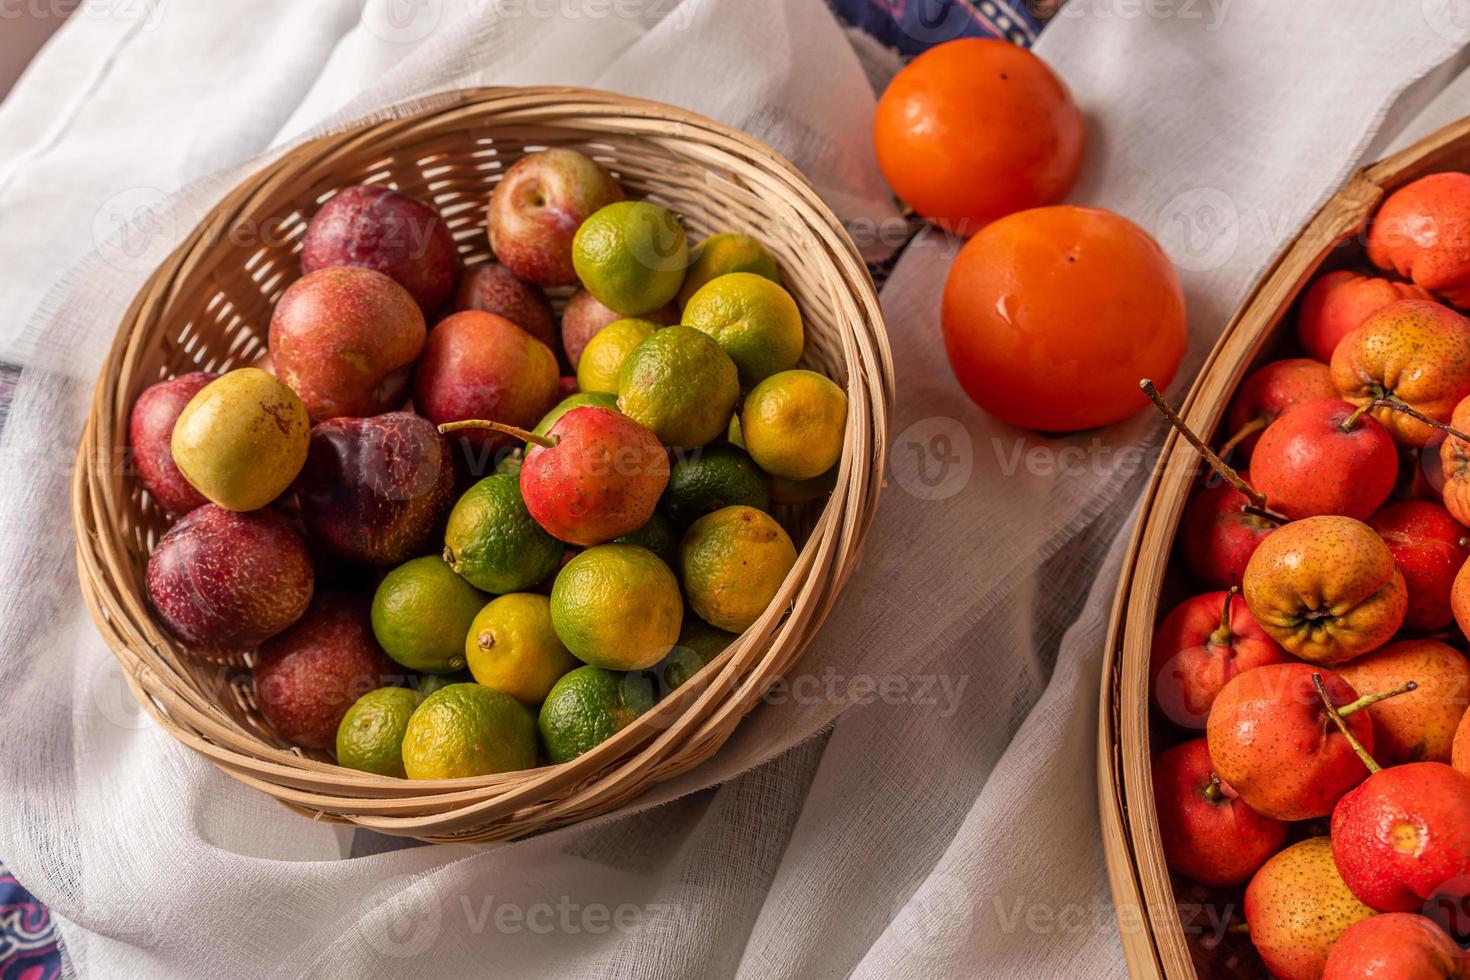 många färger och sorter av frukt finns antingen på tallriken eller utspridda på träbordet foto